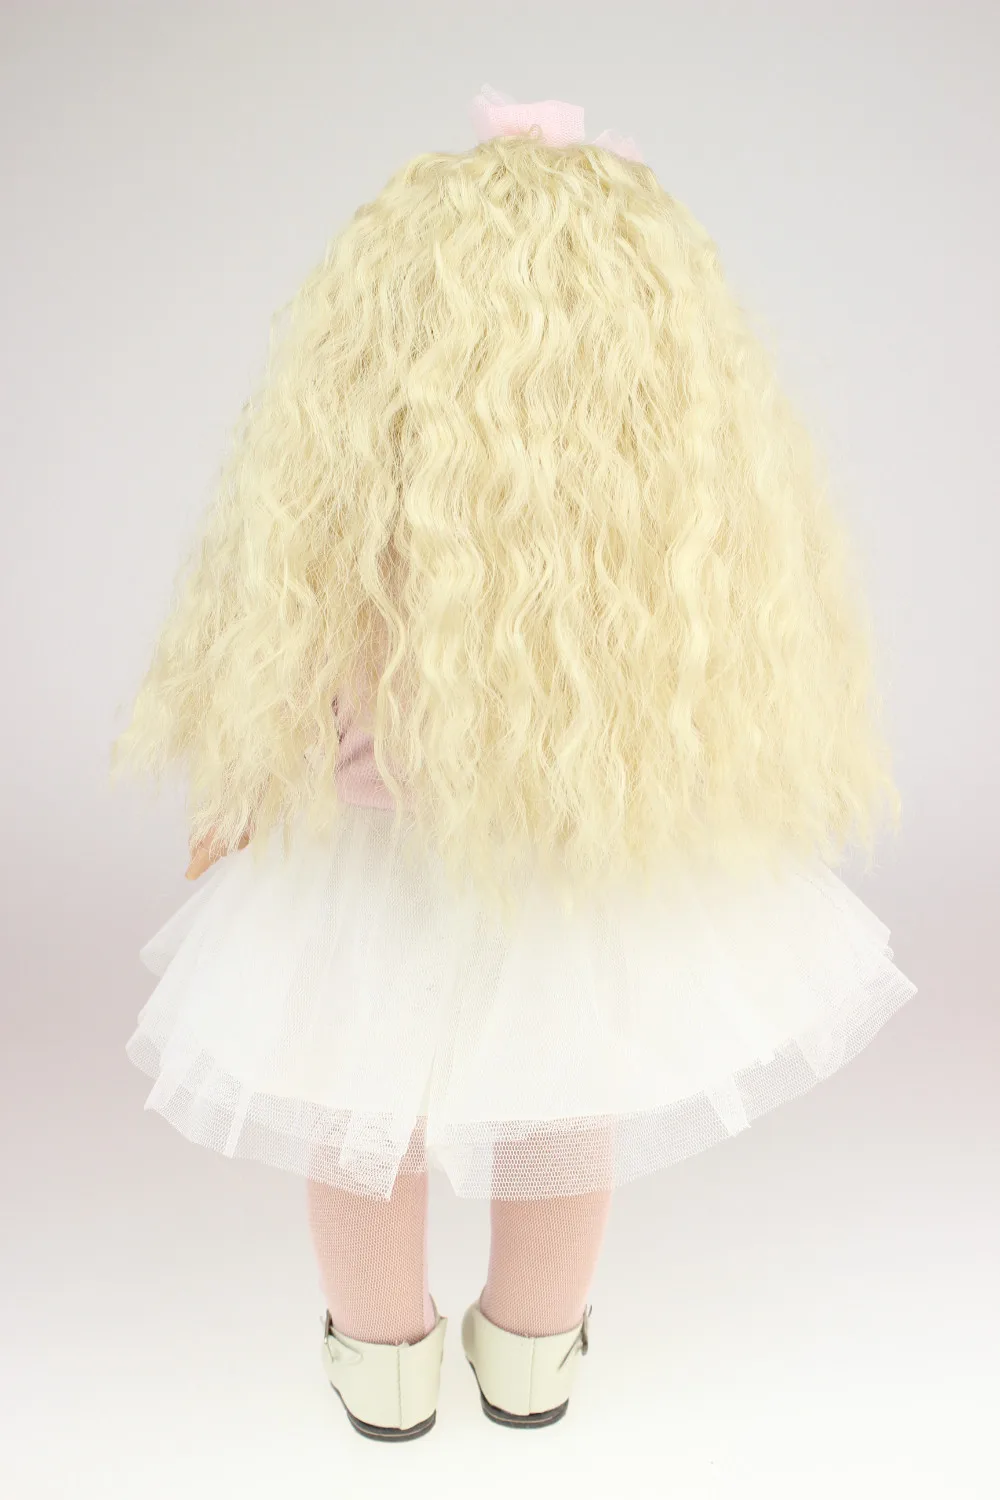 Полный винил 18 дюймов Американский Принцесса Кукла для продажи реалистичные детские куклы ручной работы для девочек живой Boneca